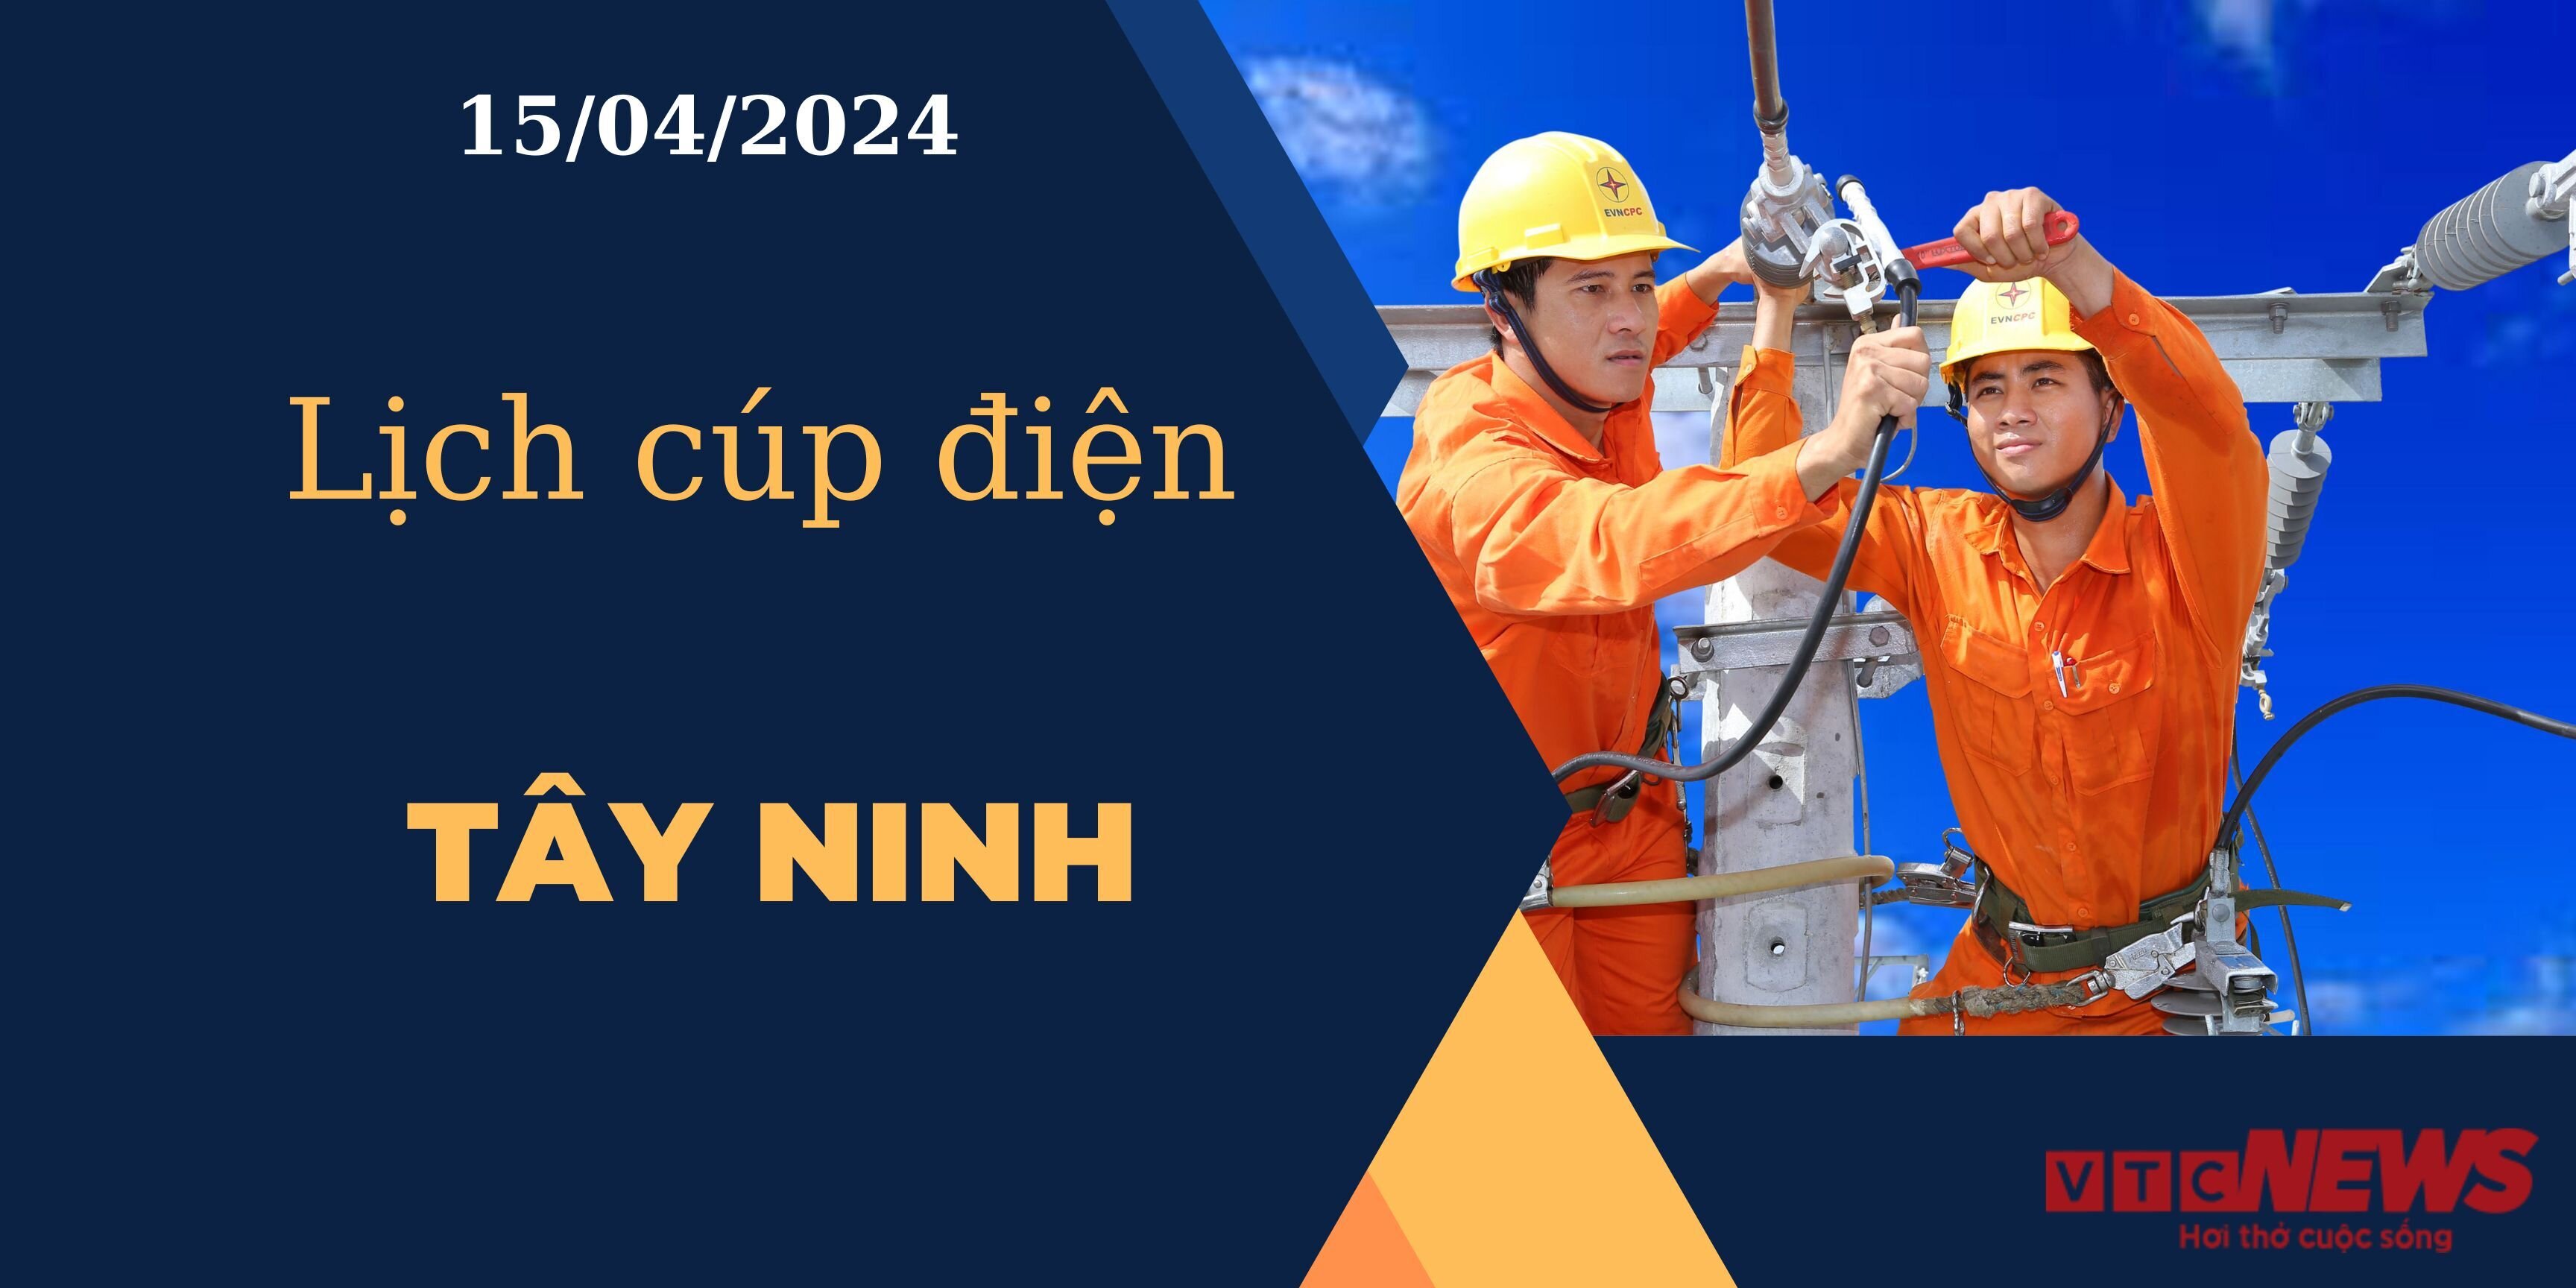 Lịch cúp điện hôm nay ngày 15/04/2024 tại Tây Ninh